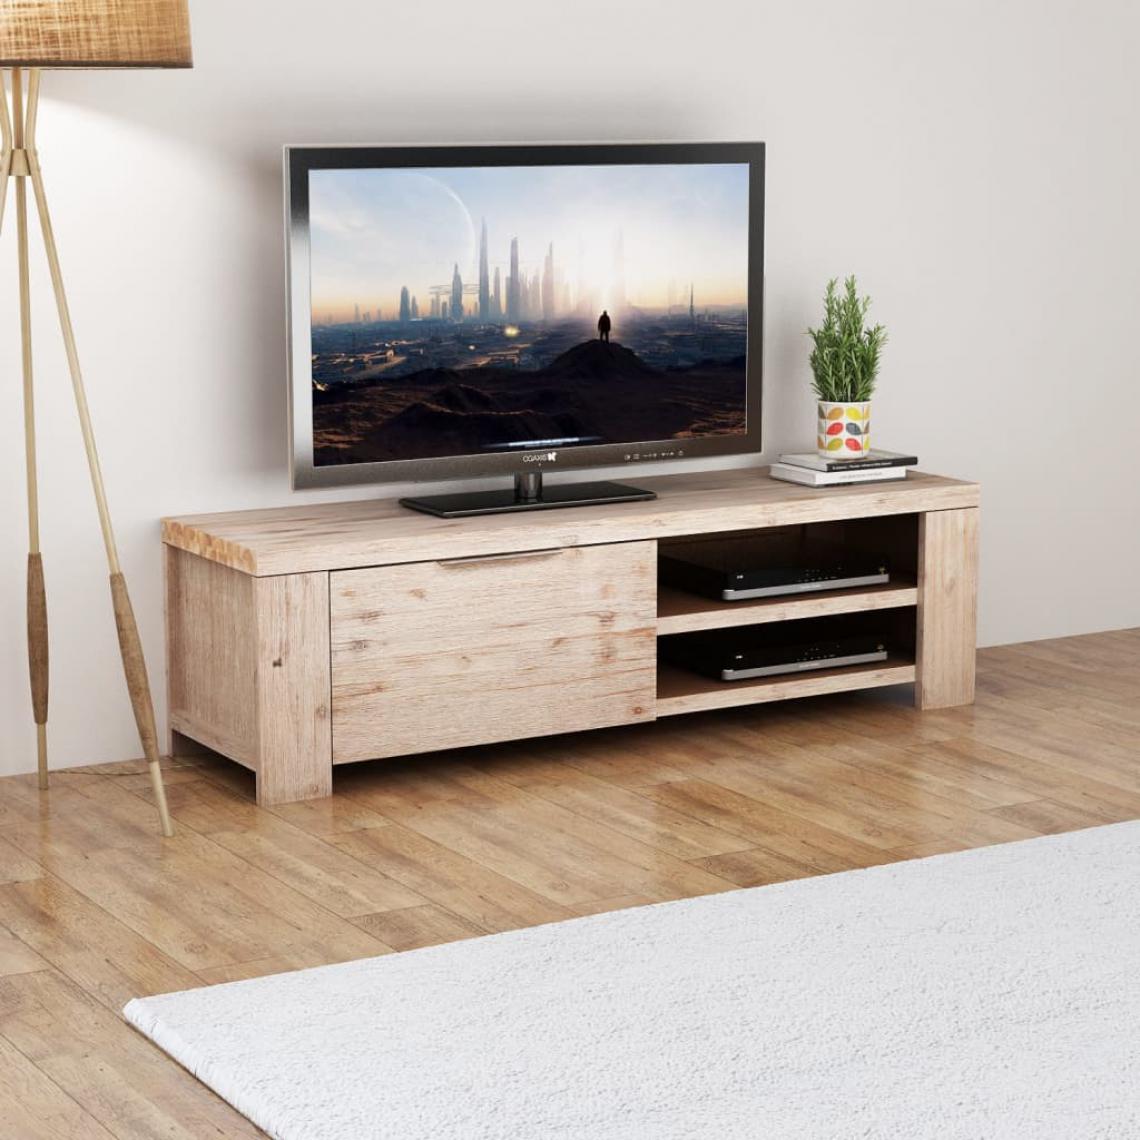 Chunhelife - Meuble TV Bois d'acacia massif brossé 140 x 38 x 40 cm - Meubles TV, Hi-Fi